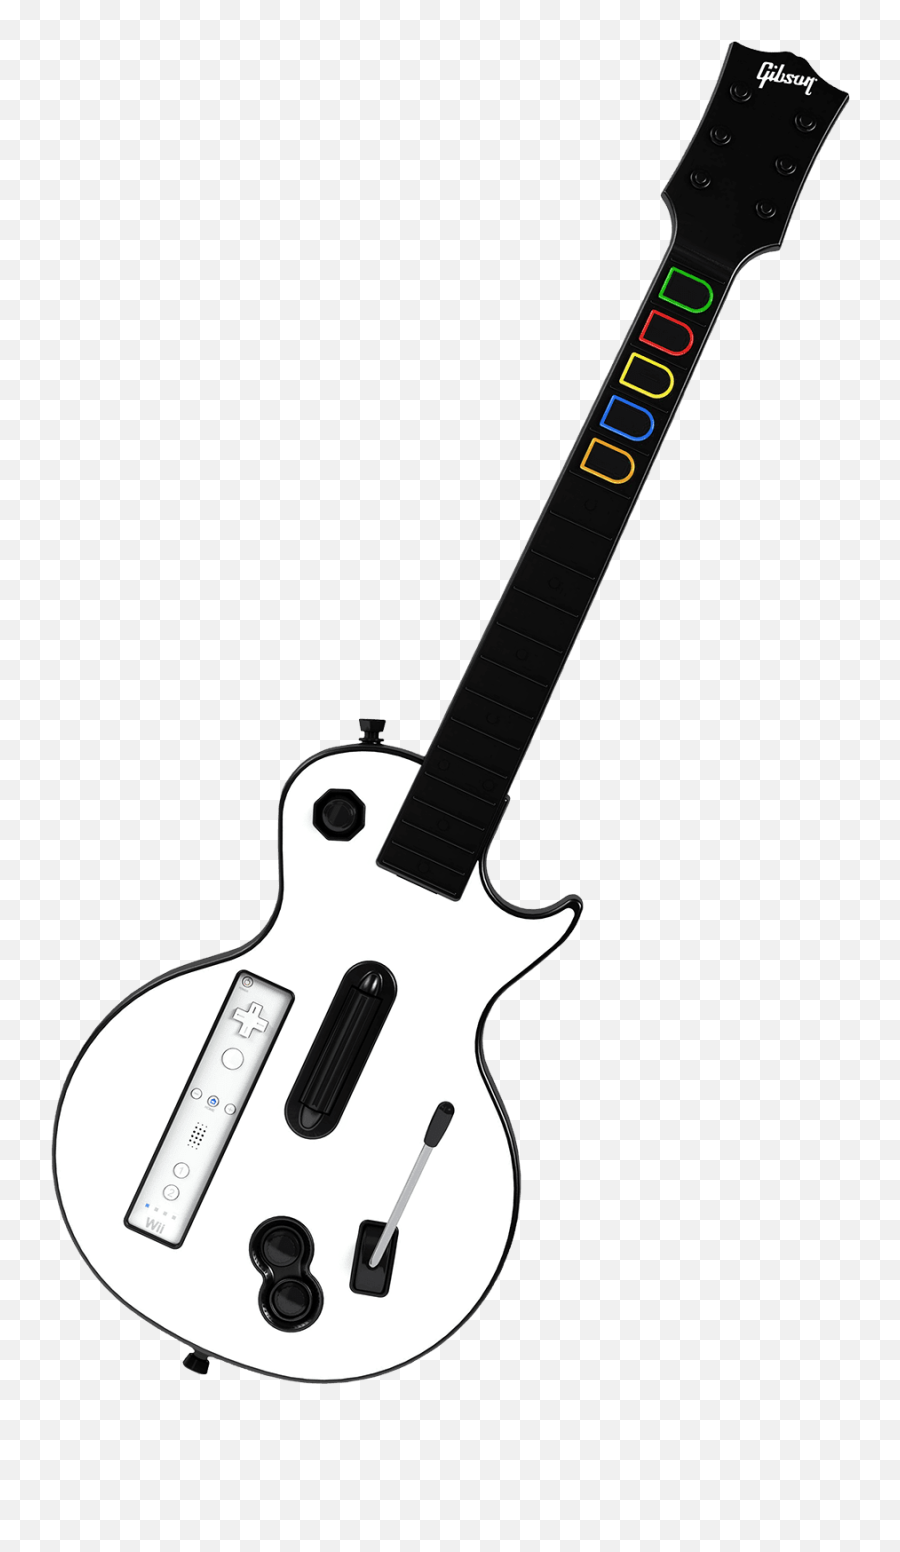 Download Nintendo Wii Guitar Hero Iii - Guitar Hero Les Paul Wii Png,Guitar Hero Logo